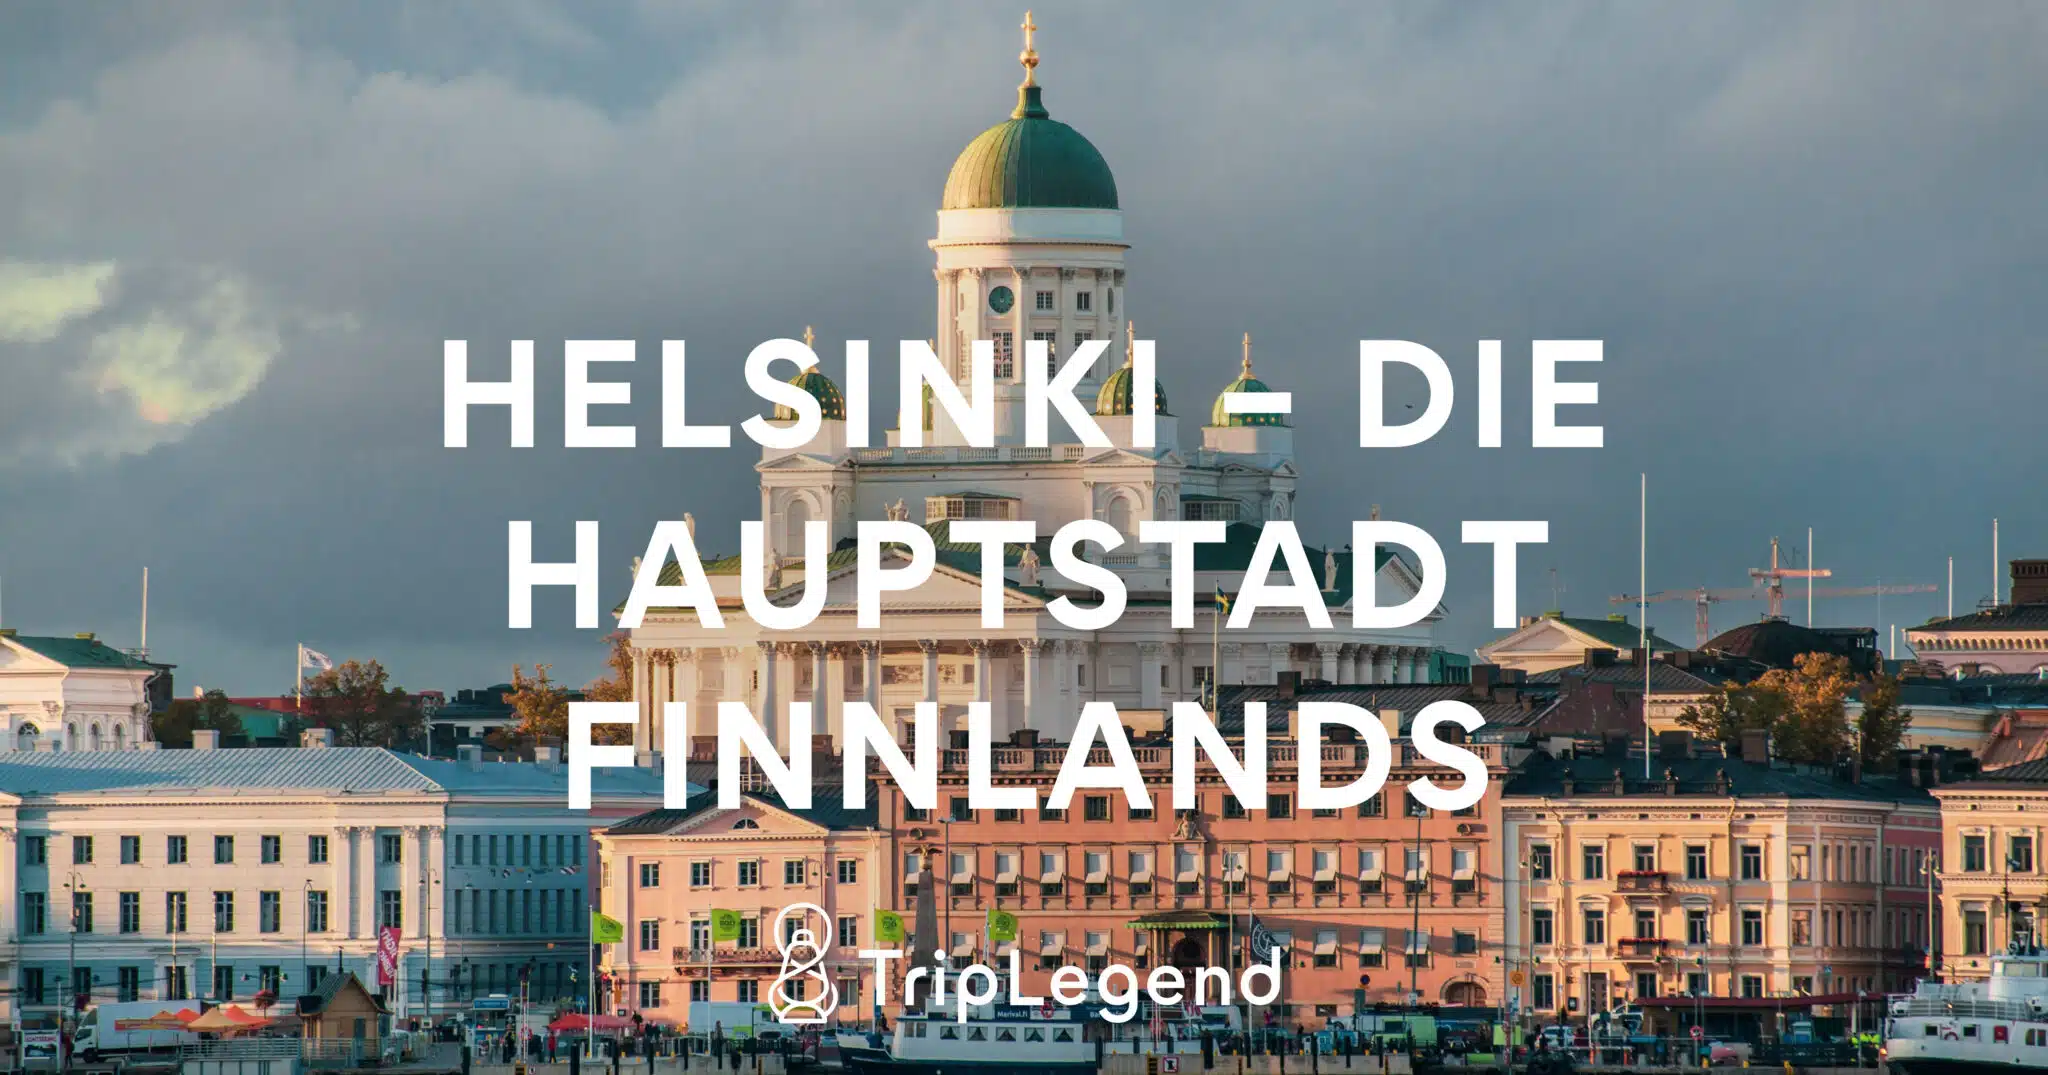 Helsinki - Suomen pääkaupunki1 Scaled.jpg